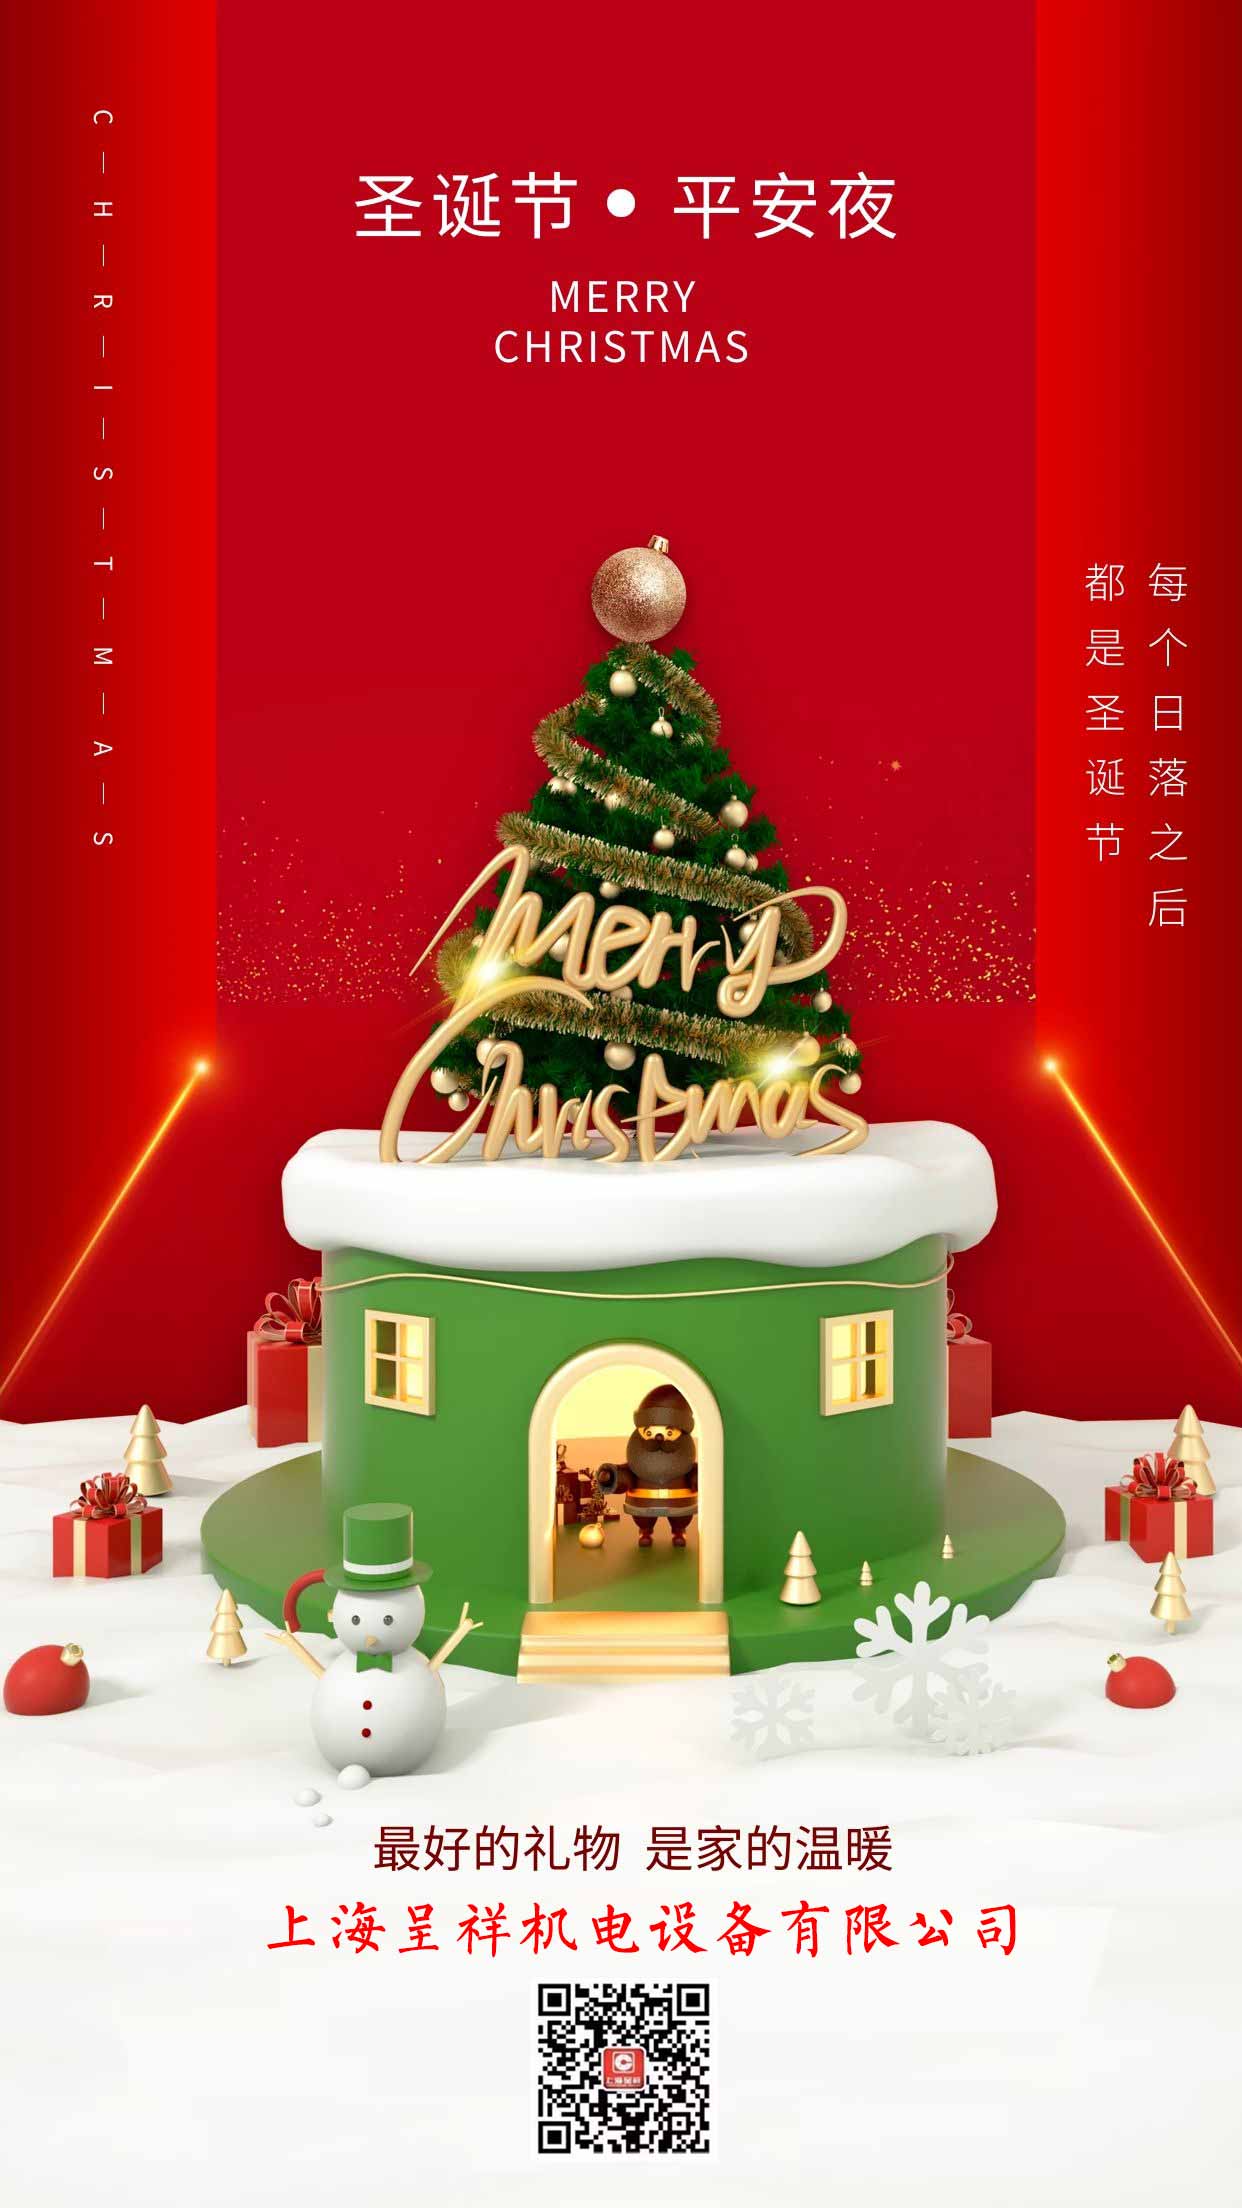 圣诞节-亚星体育(上海)机电设备有限公司.jpeg